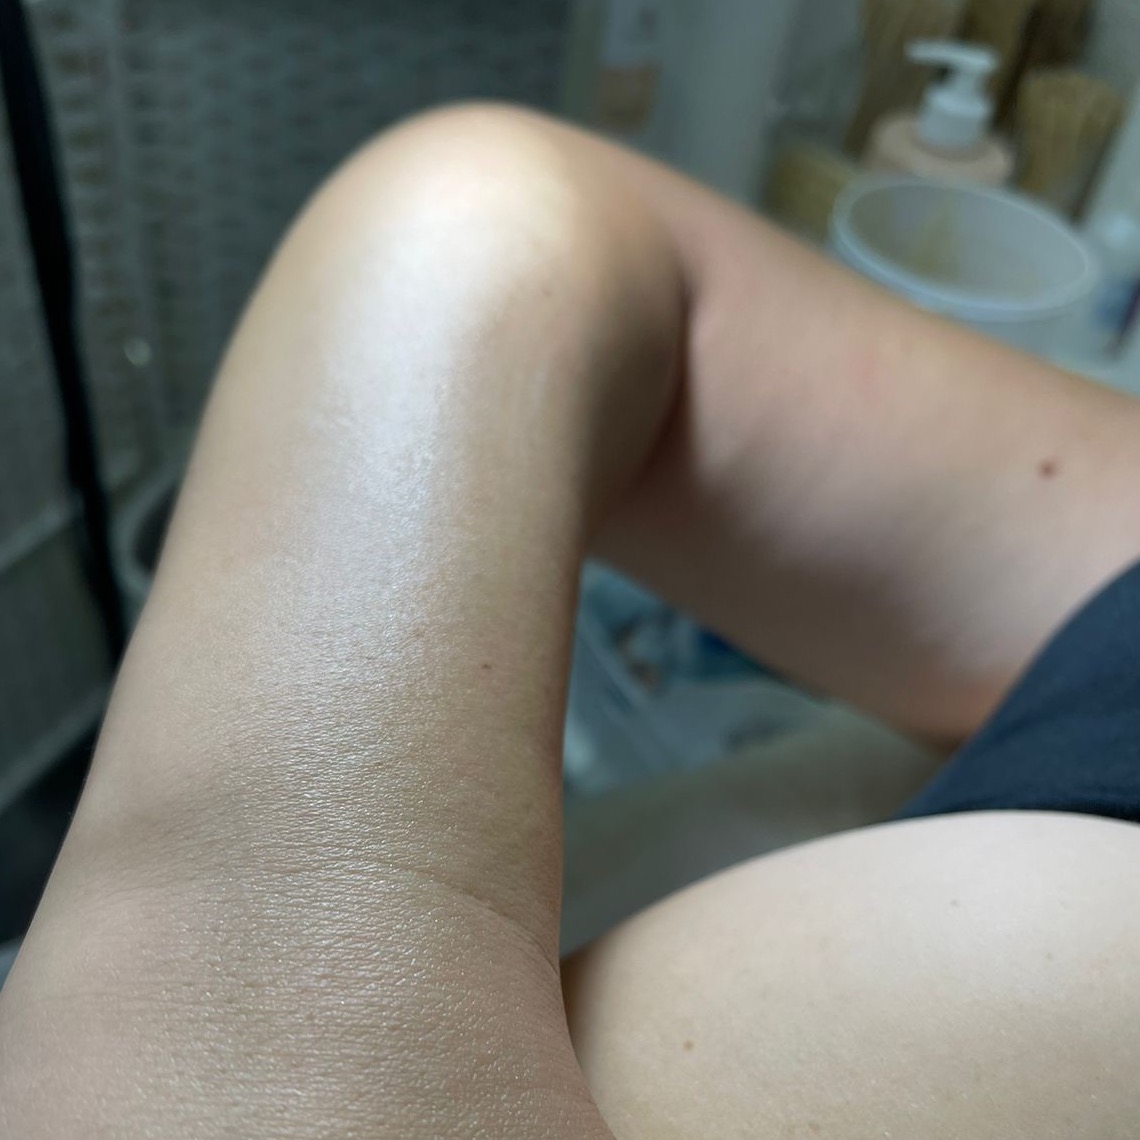 Изображение зоны рук после процедуры шугаринга, показана гладкая кожа без волос